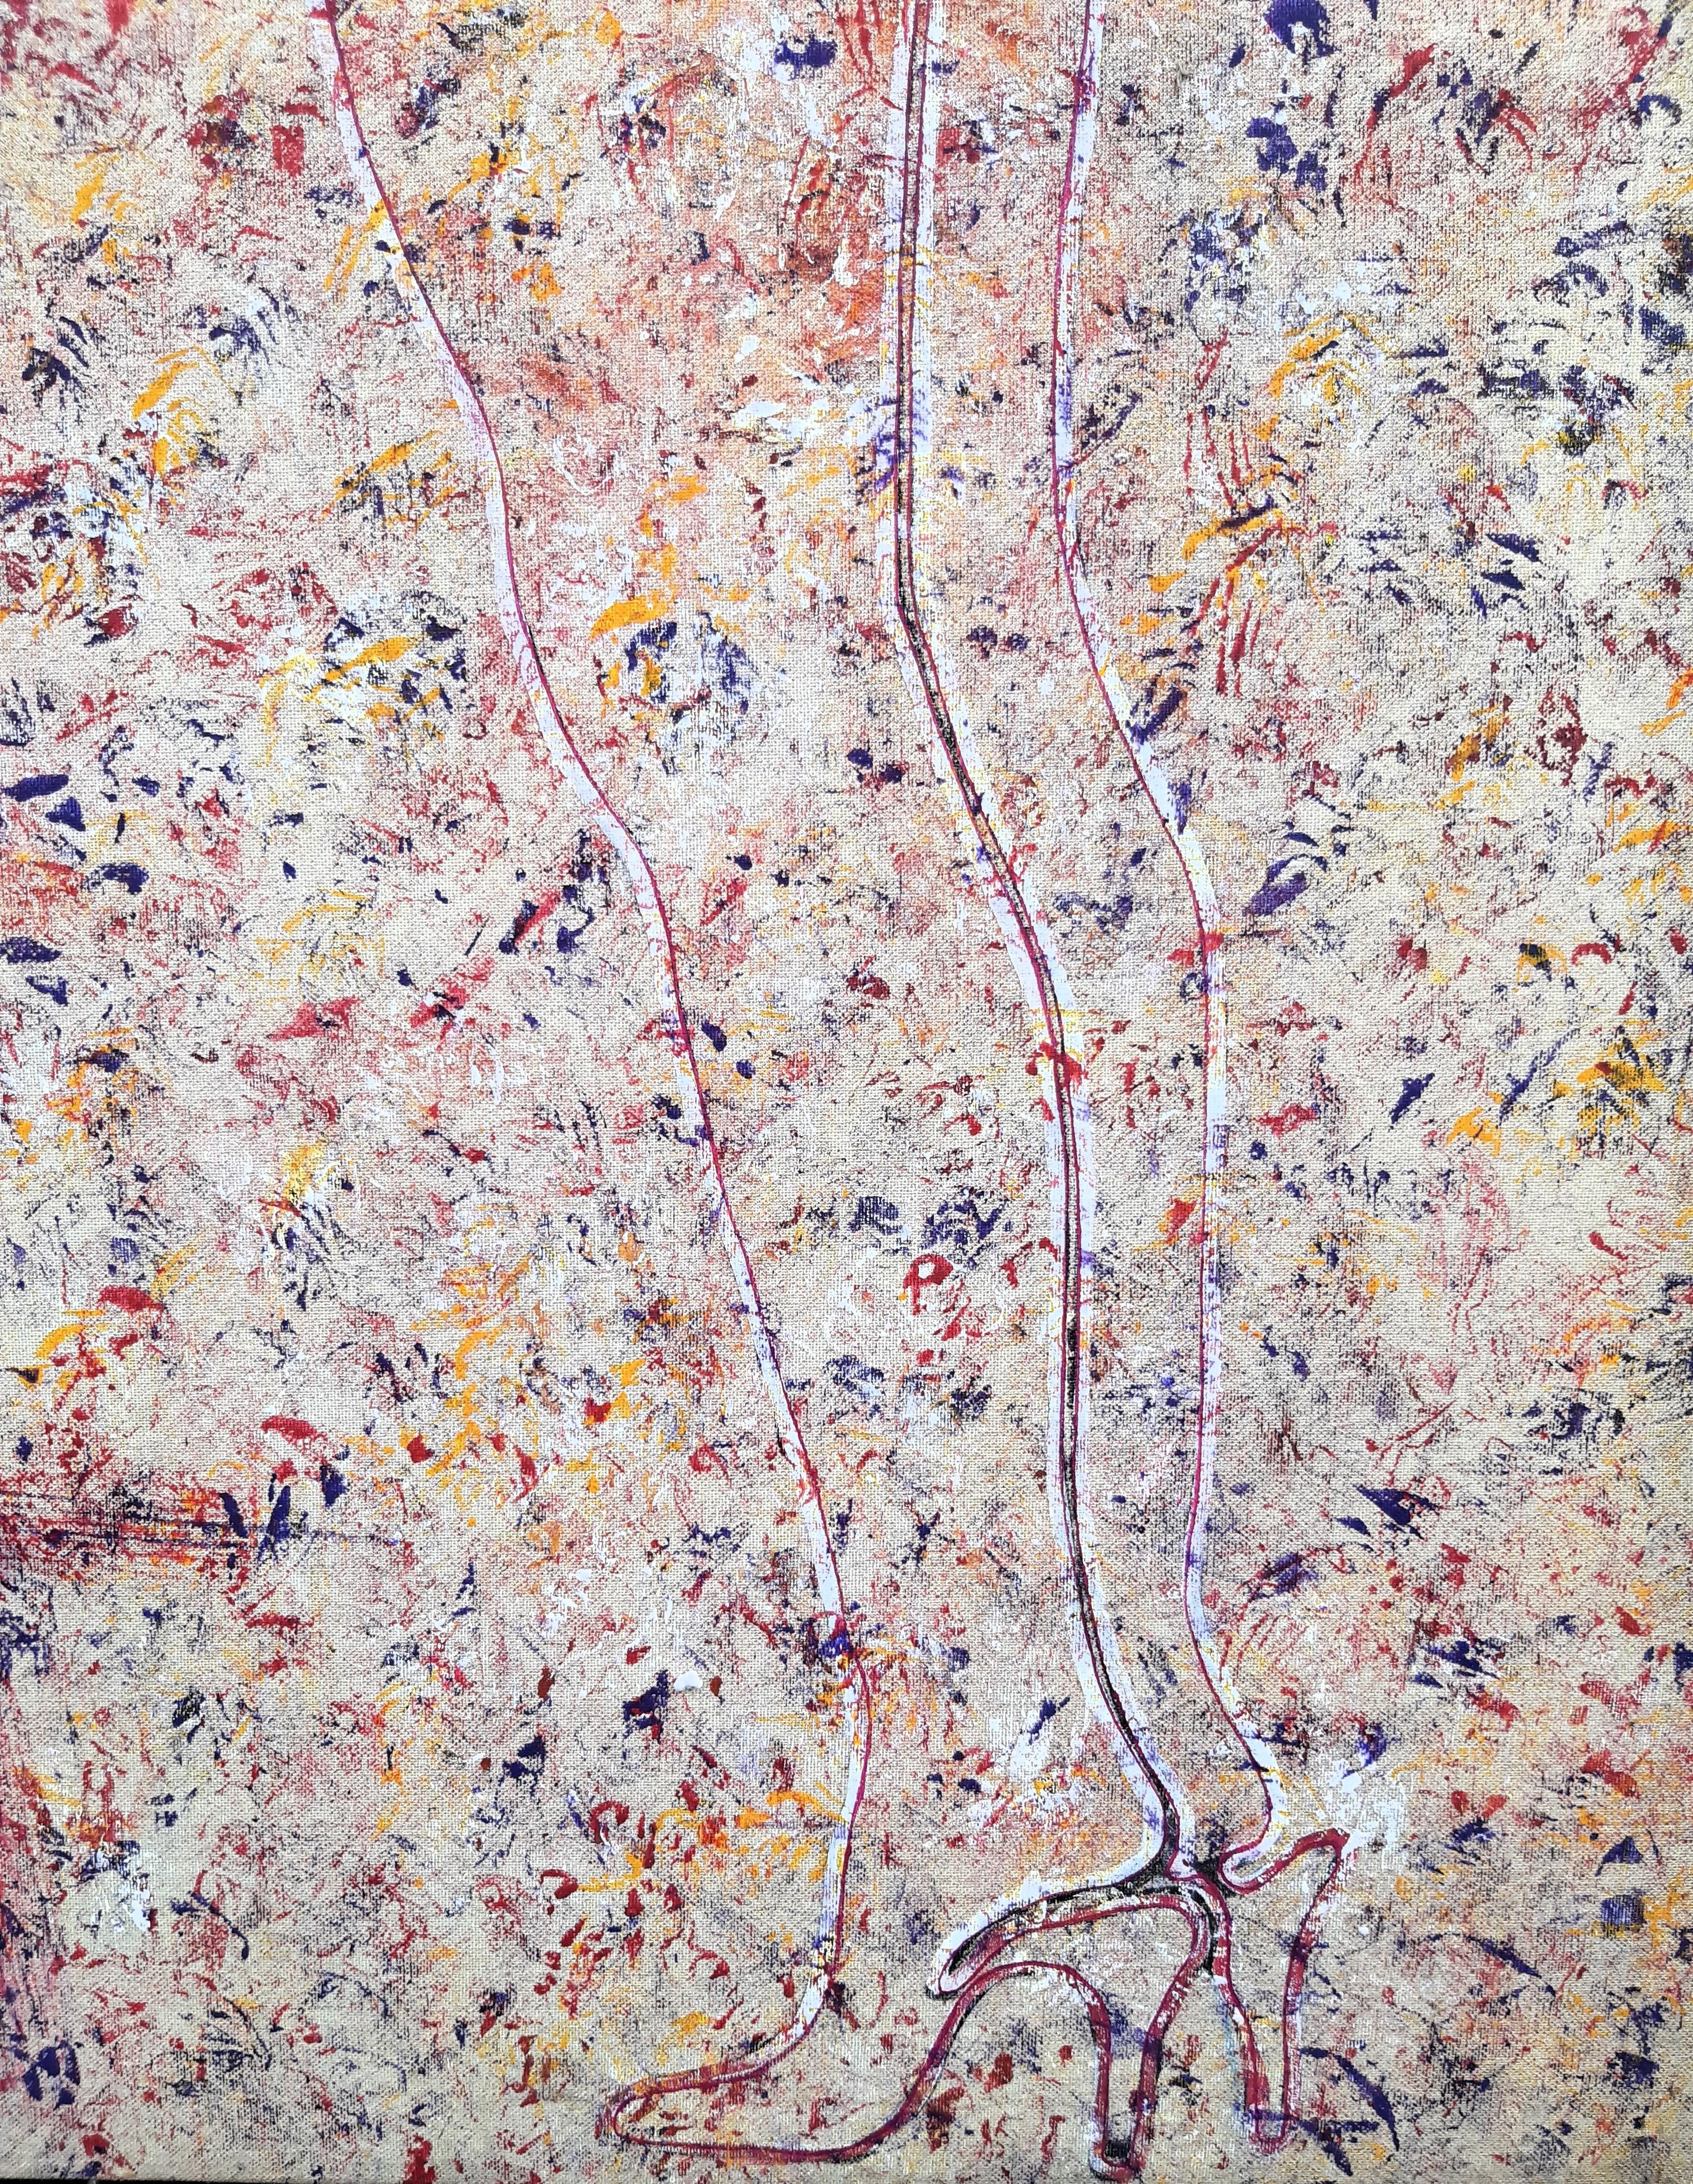 Gemälde AKT von Peter Patzak, entstanden wohl um 1980/-90.
Mischtechnik auf Leinwand, auf Keilrahmen gezogen, links unten um 90° gedreht collagierter Druck eines Frauengesichts aufgebracht. Links oben frontseitig signiert.

Zum Künstler :

Peter